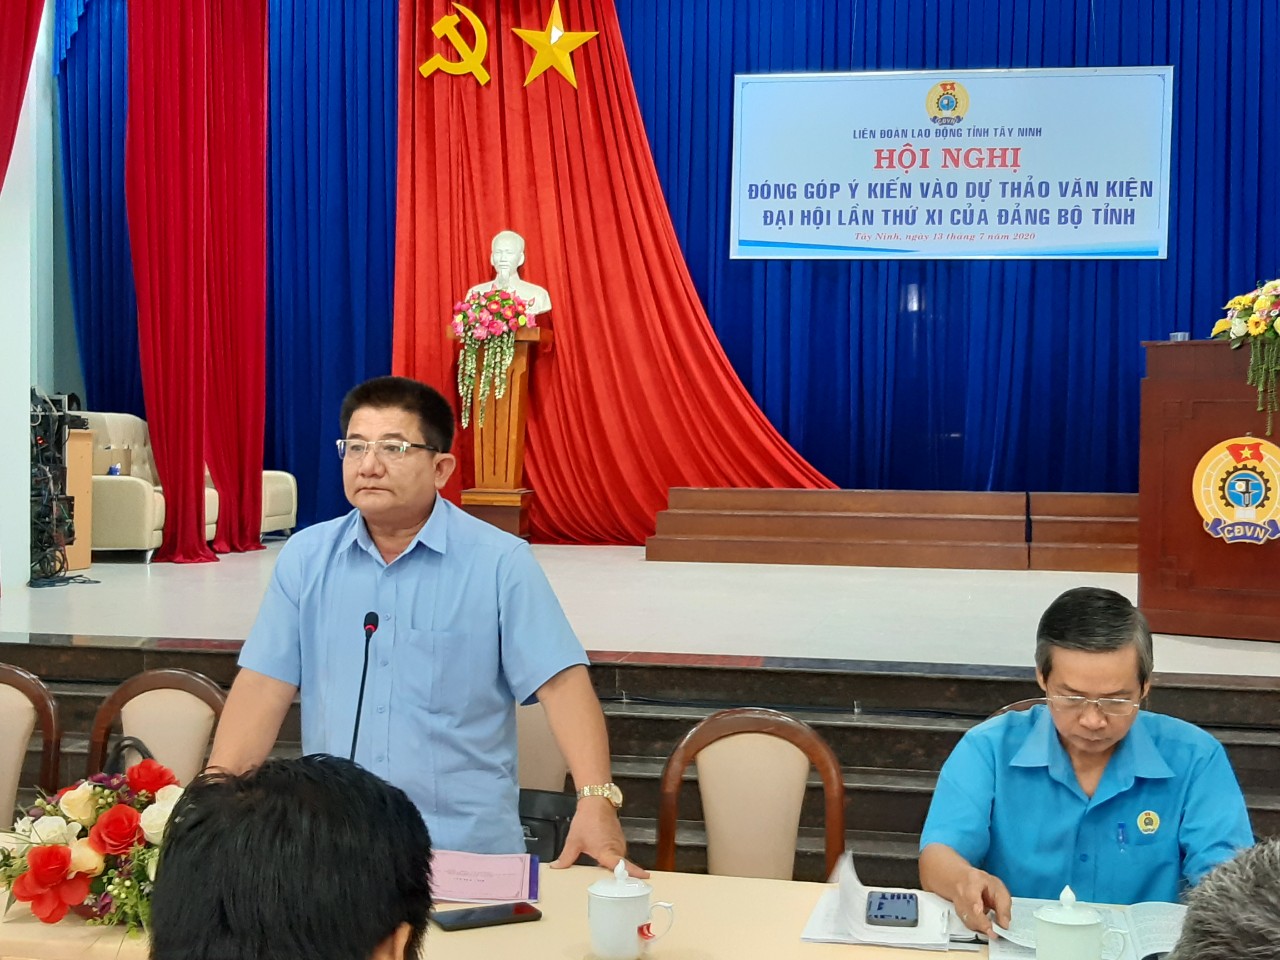 Liên đoàn Lao động tỉnh: Tổ chức Hội nghị đóng góp ý kiến vào dự thảo văn kiện Đại hội Đảng bộ tỉnh lần thứ XI (2020-2025)